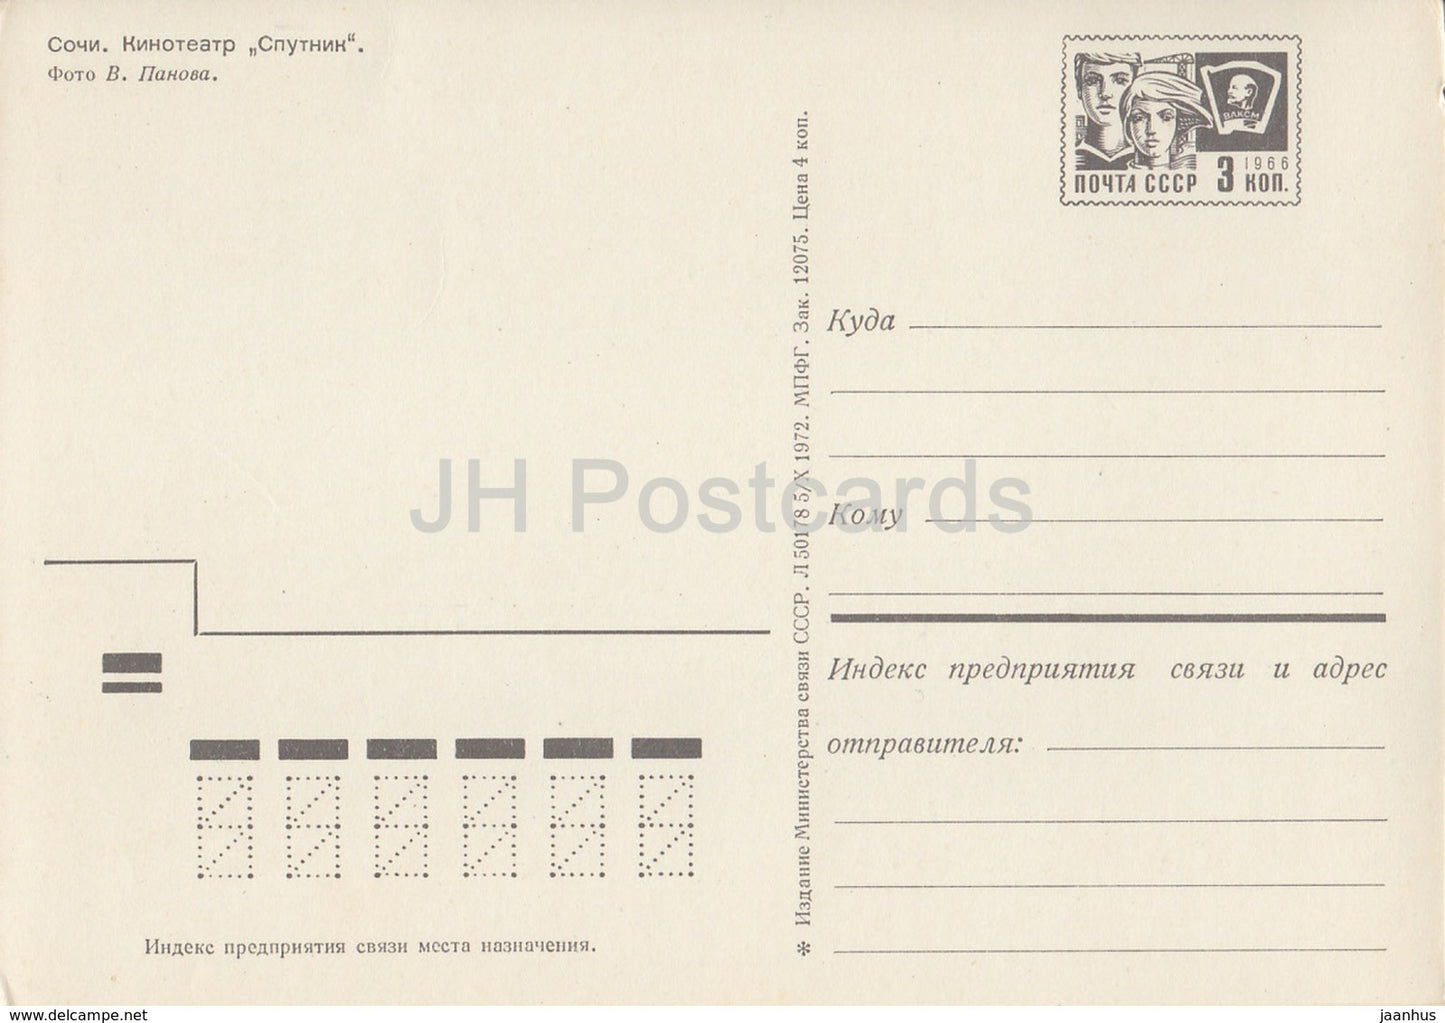 Sotchi - Cinéma Théâtre Spoutnik - entier postal - 1972 - Russie URSS - inutilisé